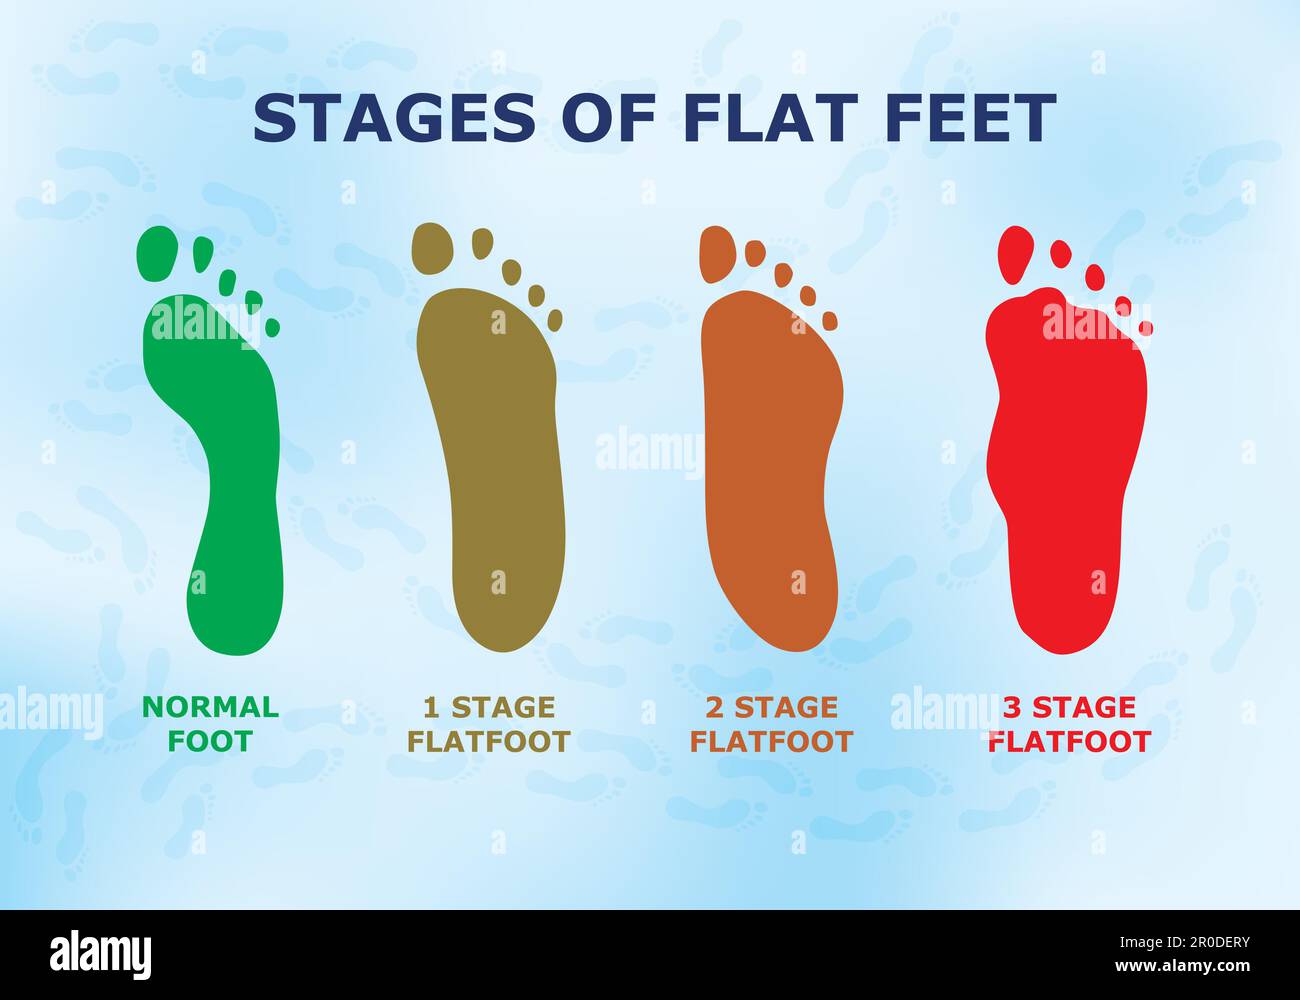 Informatives Poster über flache Füße, verschiedene Stadien der Krankheit. Stock Vektor